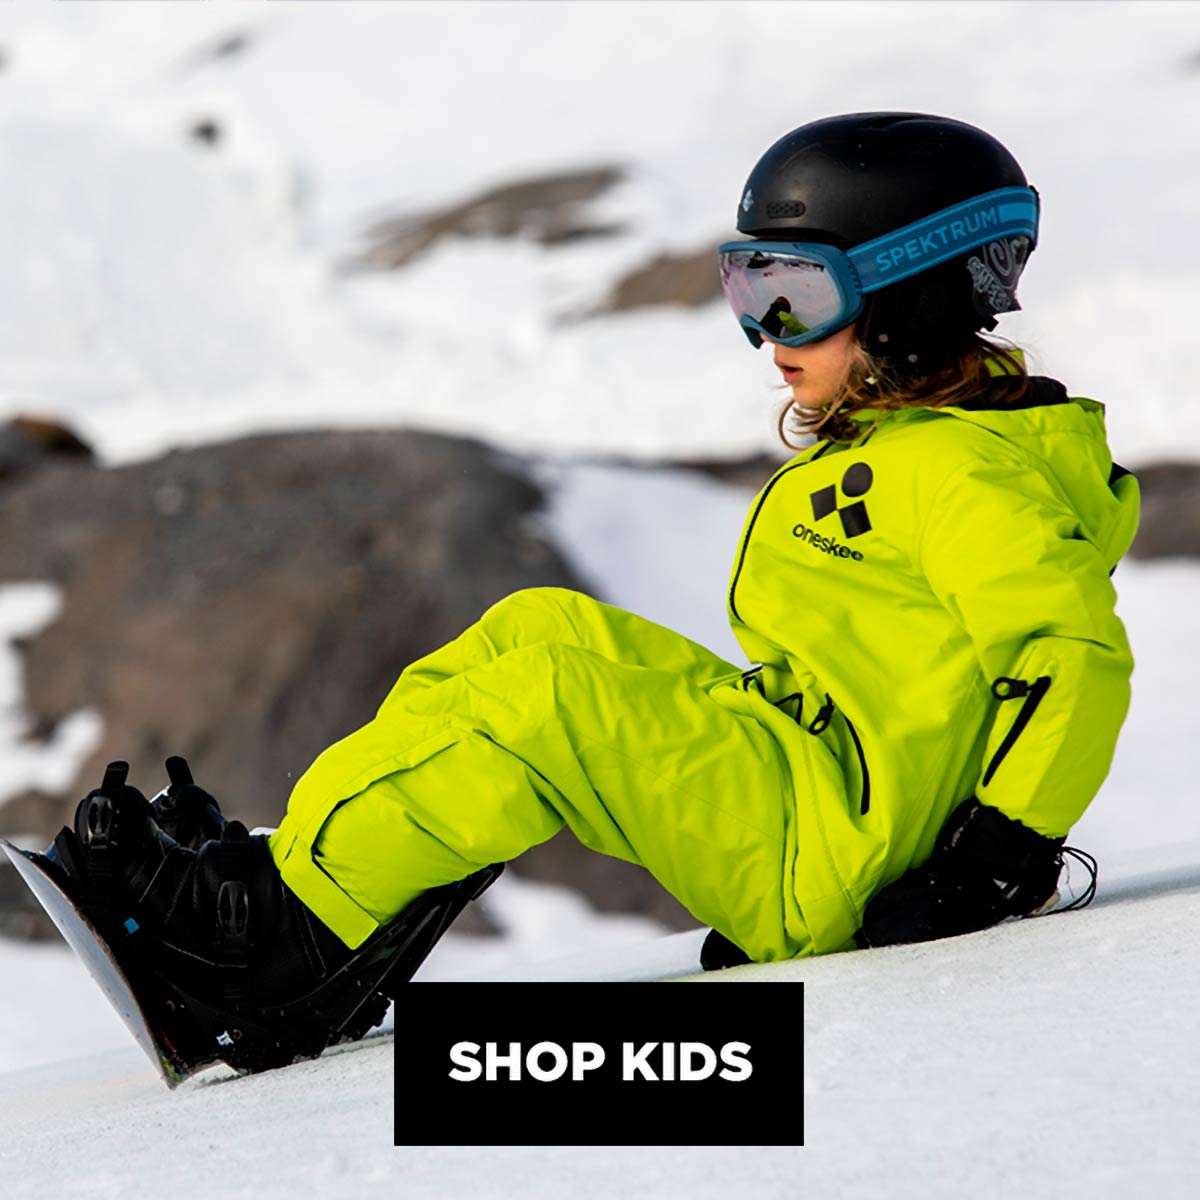 Legende sokken Pastoor Oneskee - Ski Wear & Ski Suits | Clearance: Up to 60% off